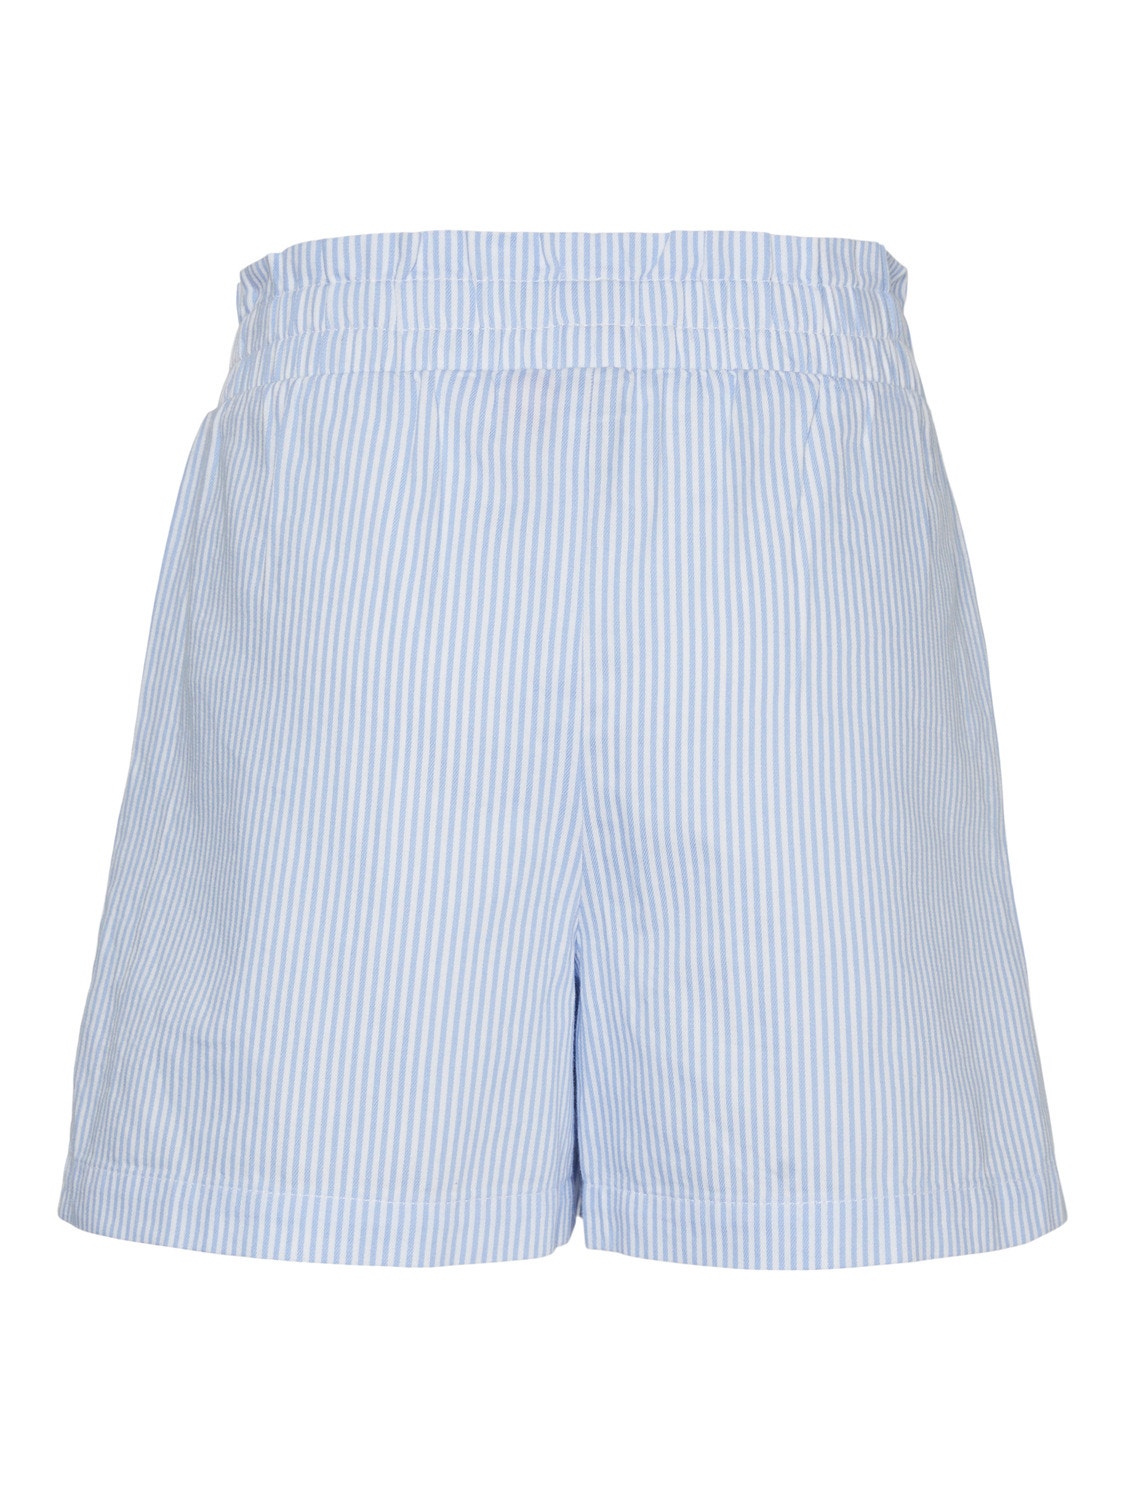 Vero Moda VMPINNY Shorts -Bright White - 10305363